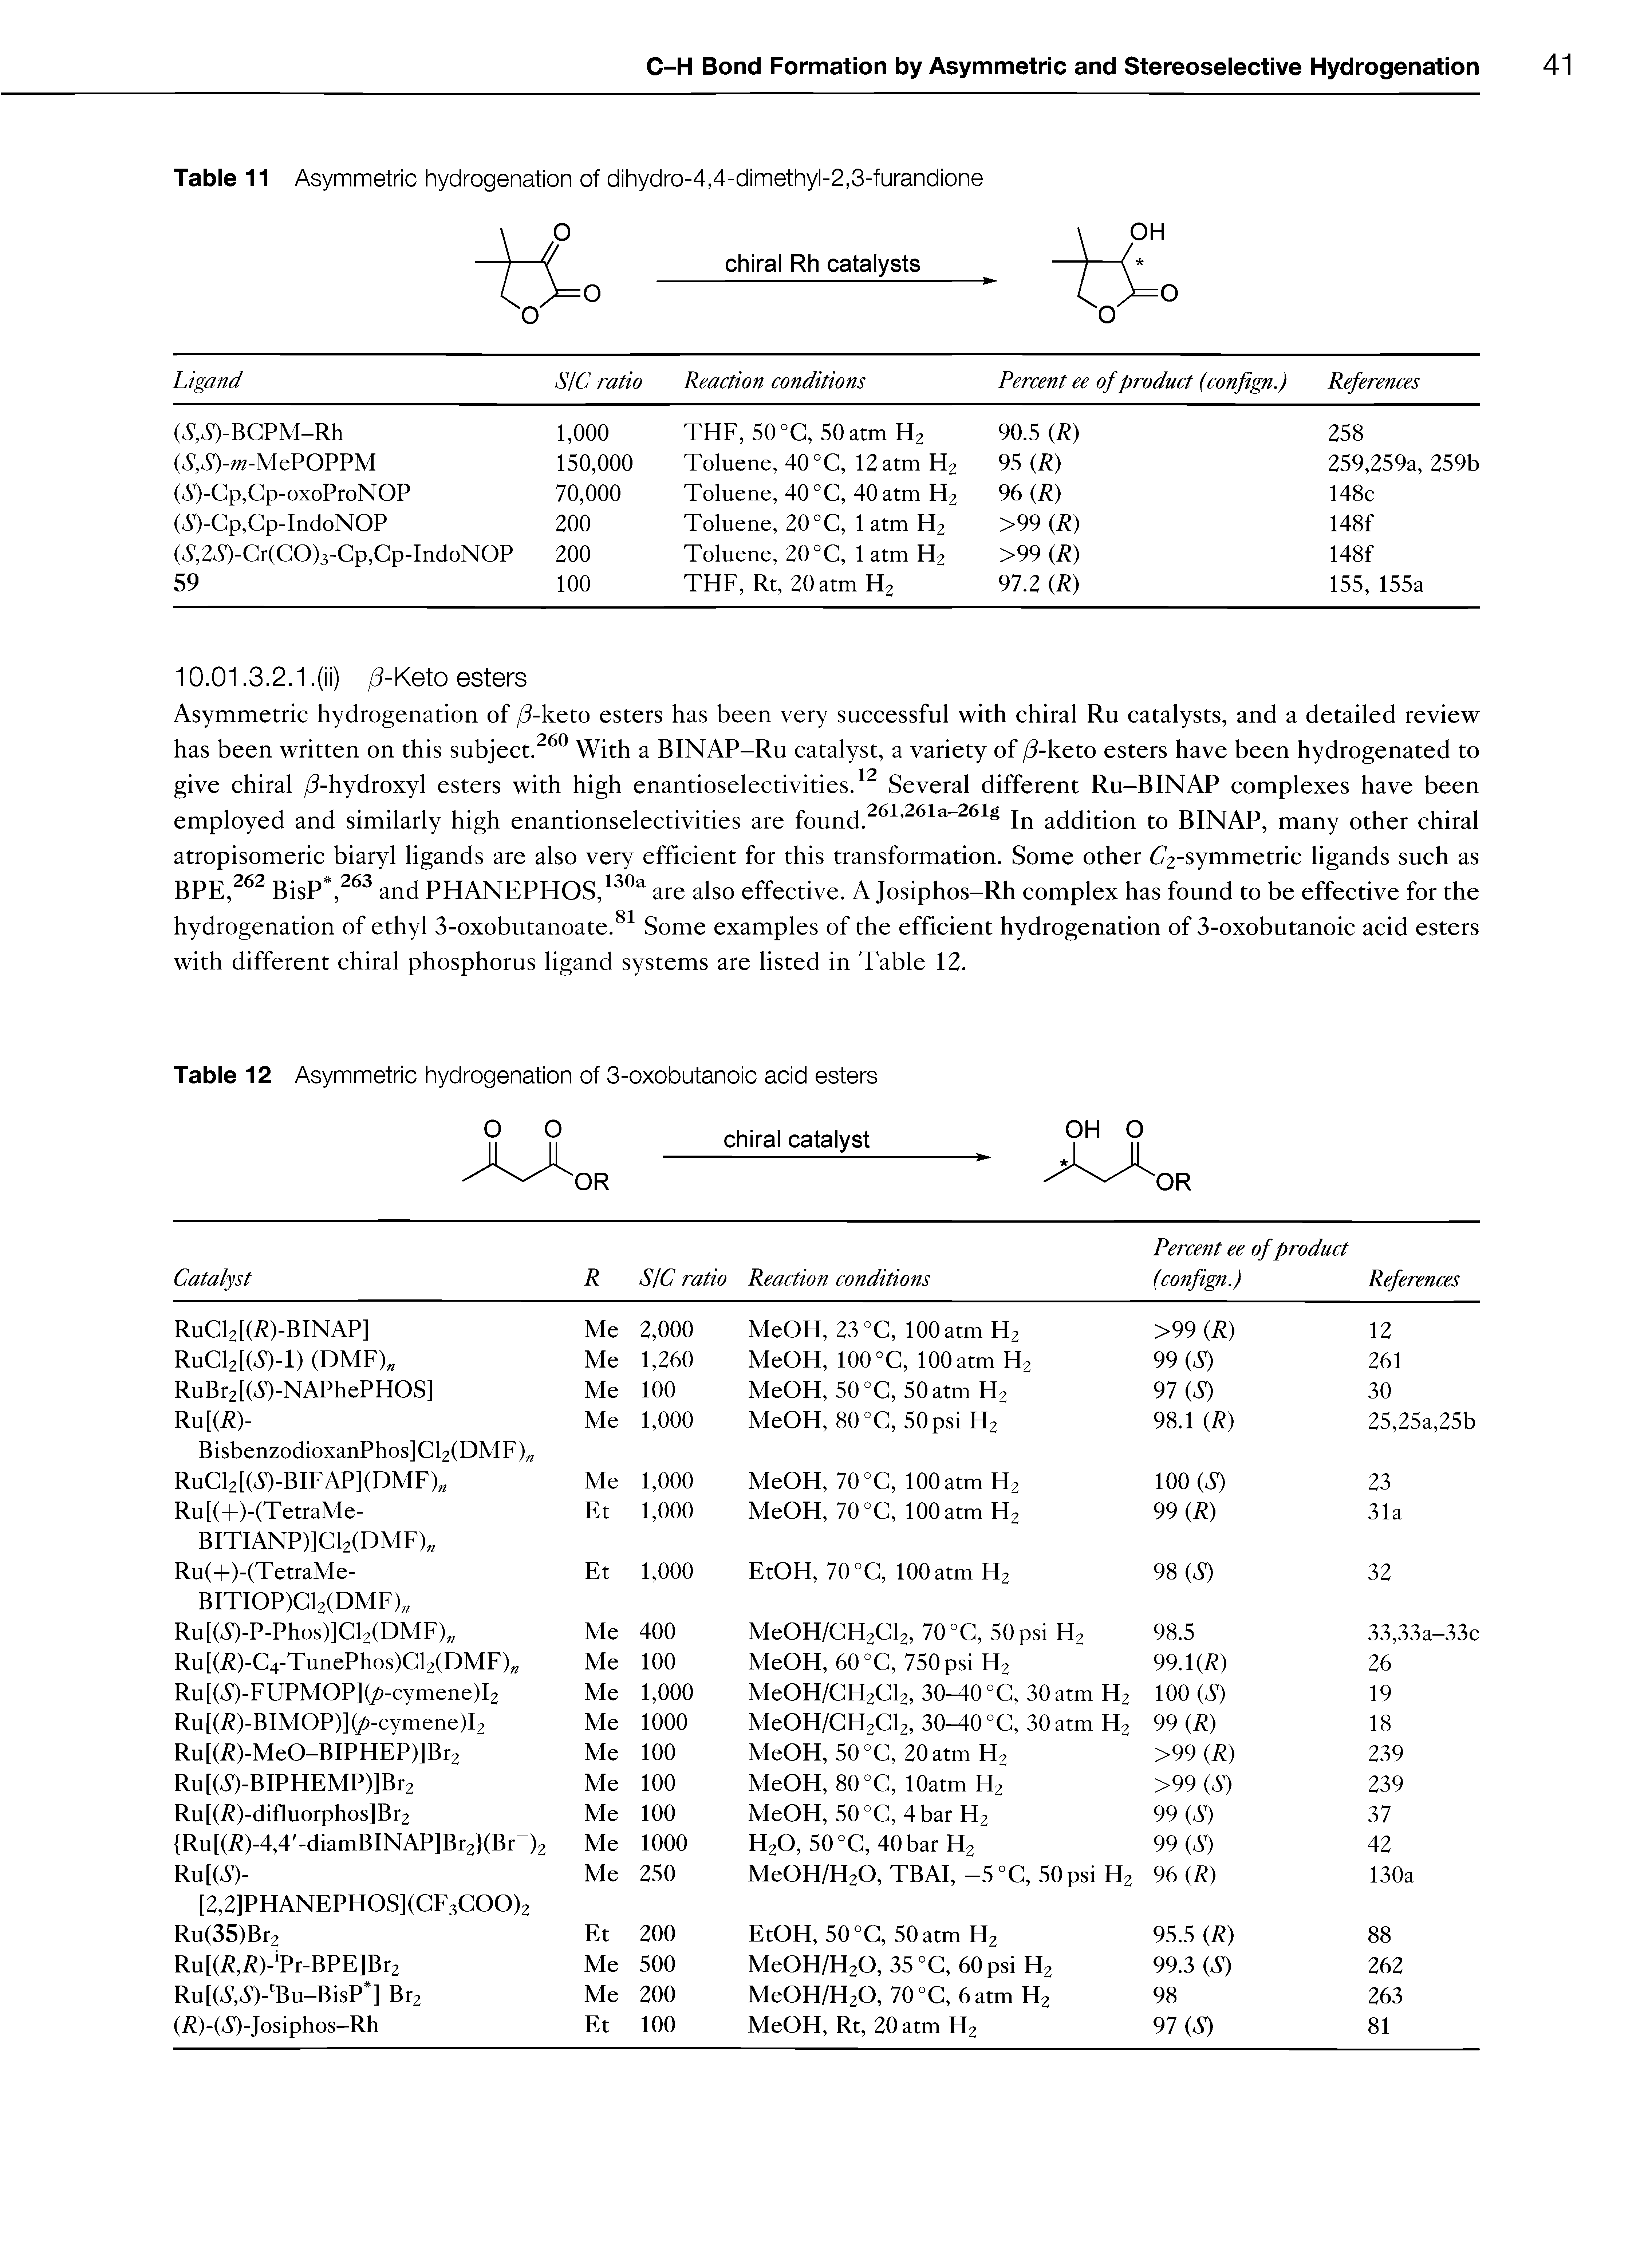 Table 11 Asymmetric hydrogenation of dihydro-4,4-dimethyl-2,3-furandione...